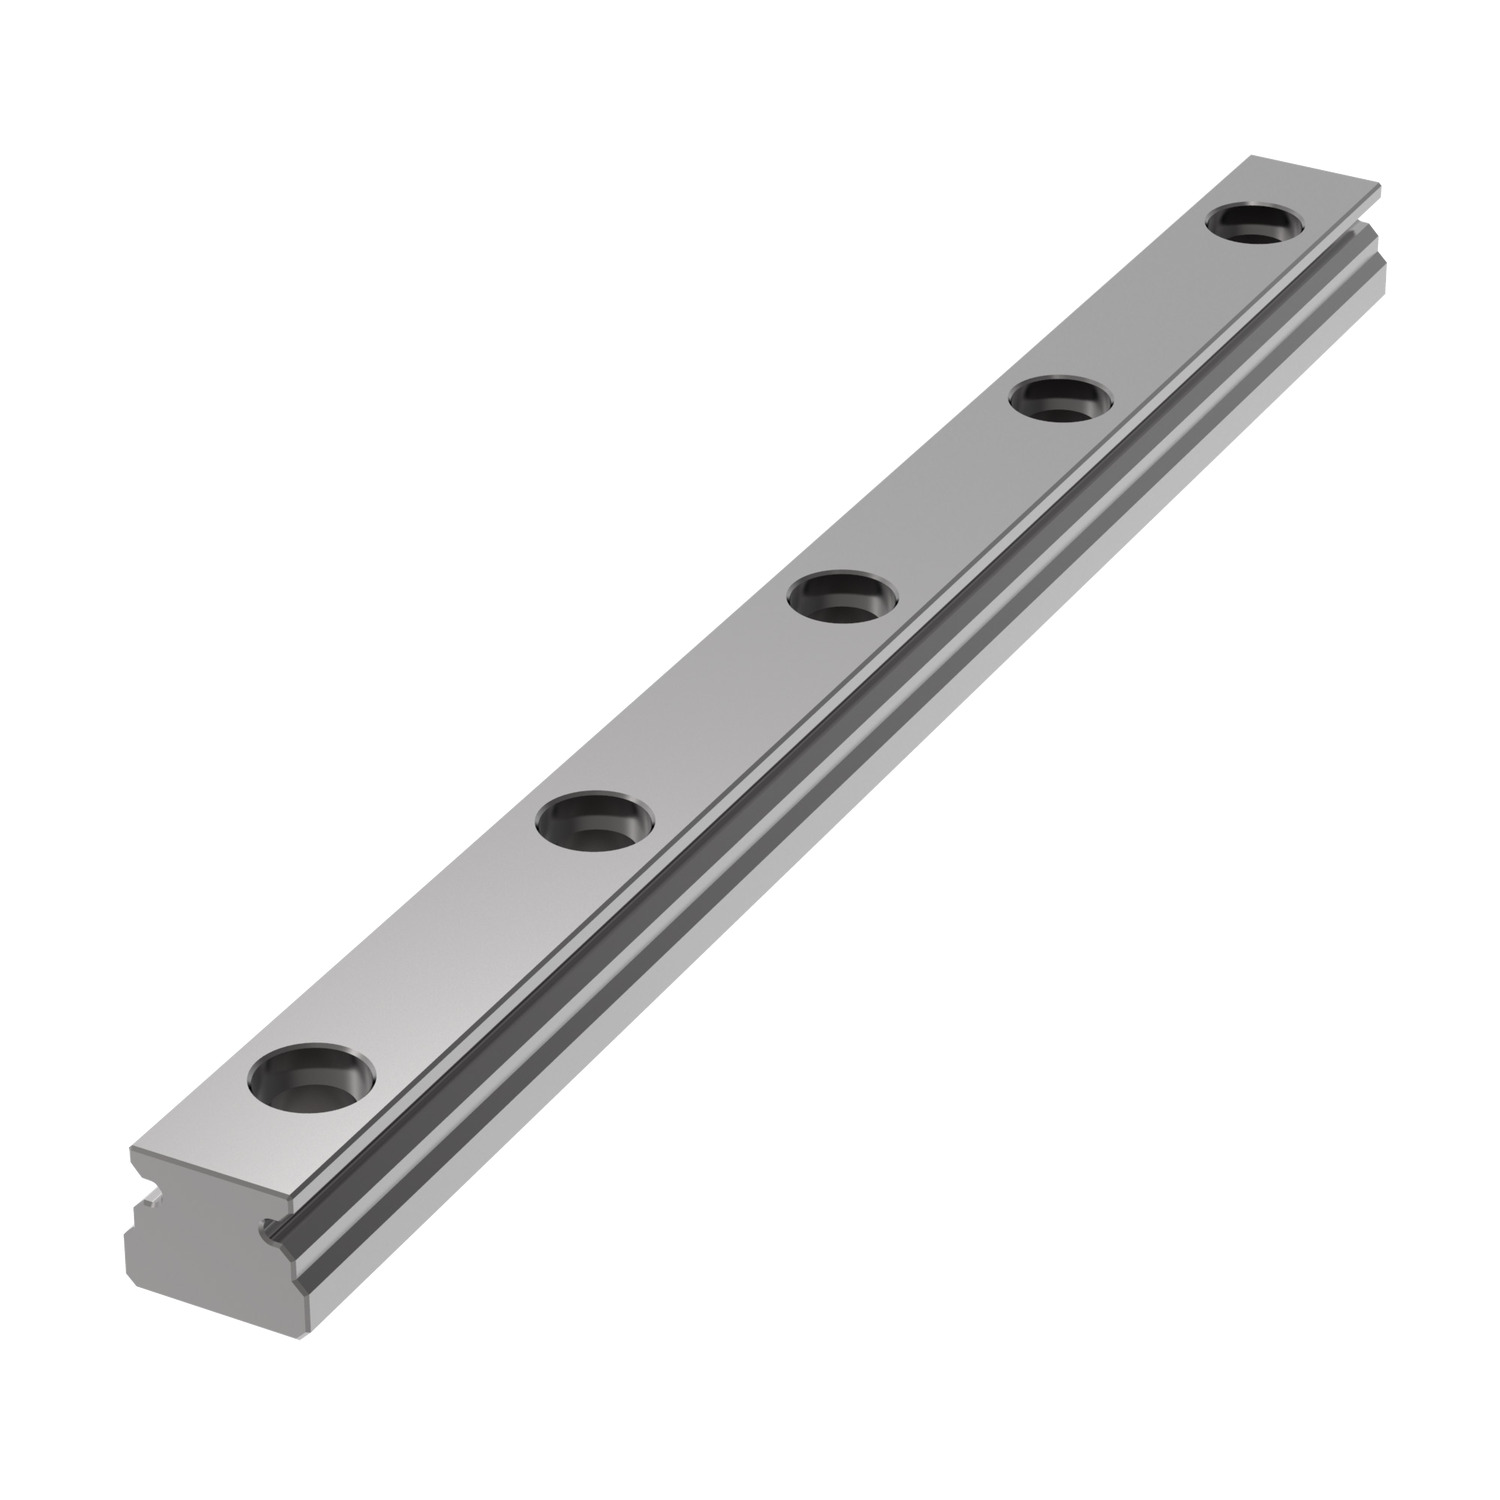 L1010.09 9mm Miniature Linear Rail